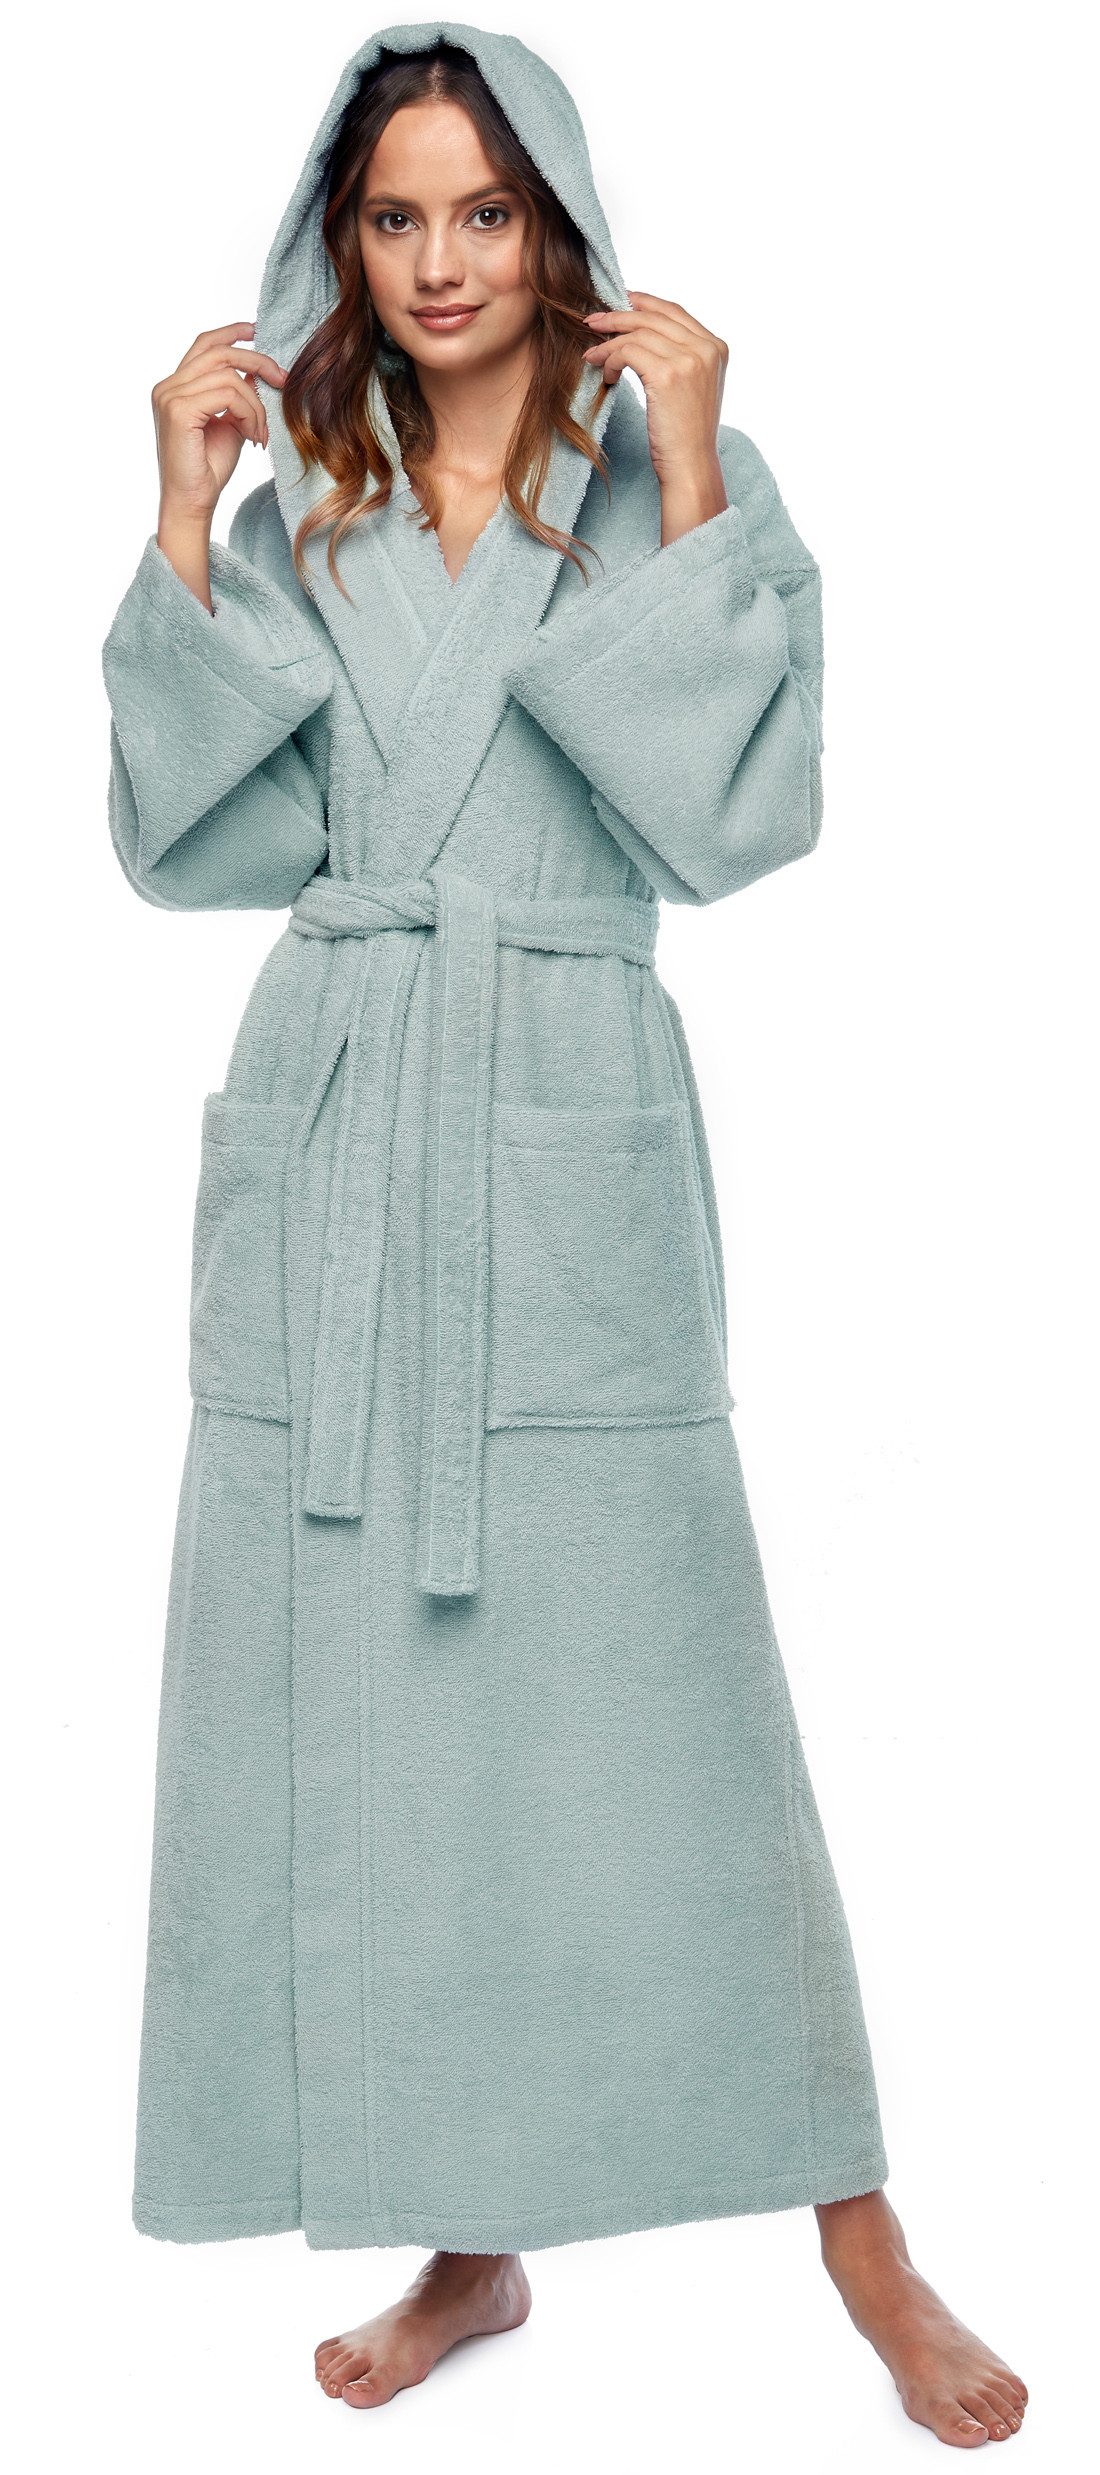 Arus Damenbademantel Astra, 100% Baumwolle, mit Kapuze, wadenlang oder extra lang, 100% Baumwolle